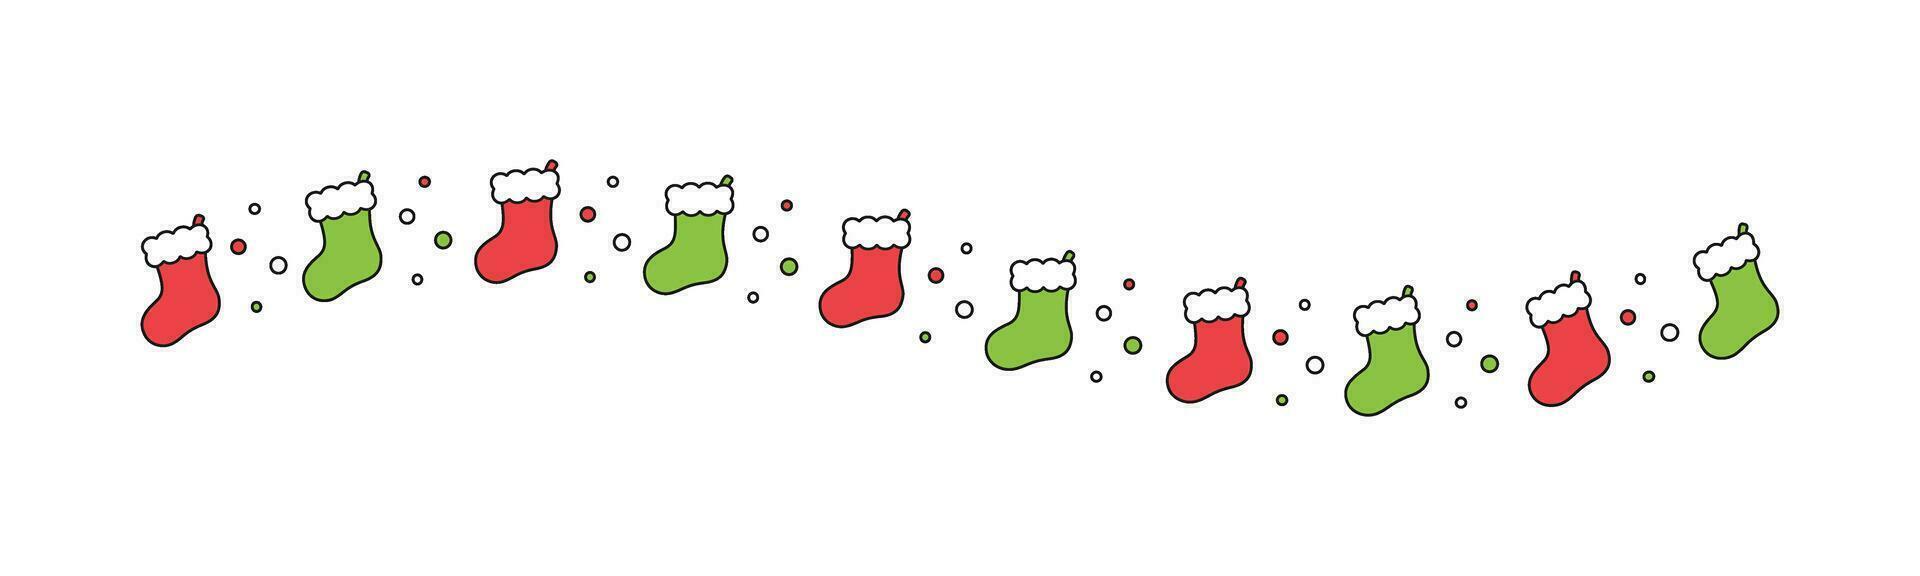 Navidad temática decorativo ondulado frontera y texto divisor, Navidad media modelo. vector ilustración.